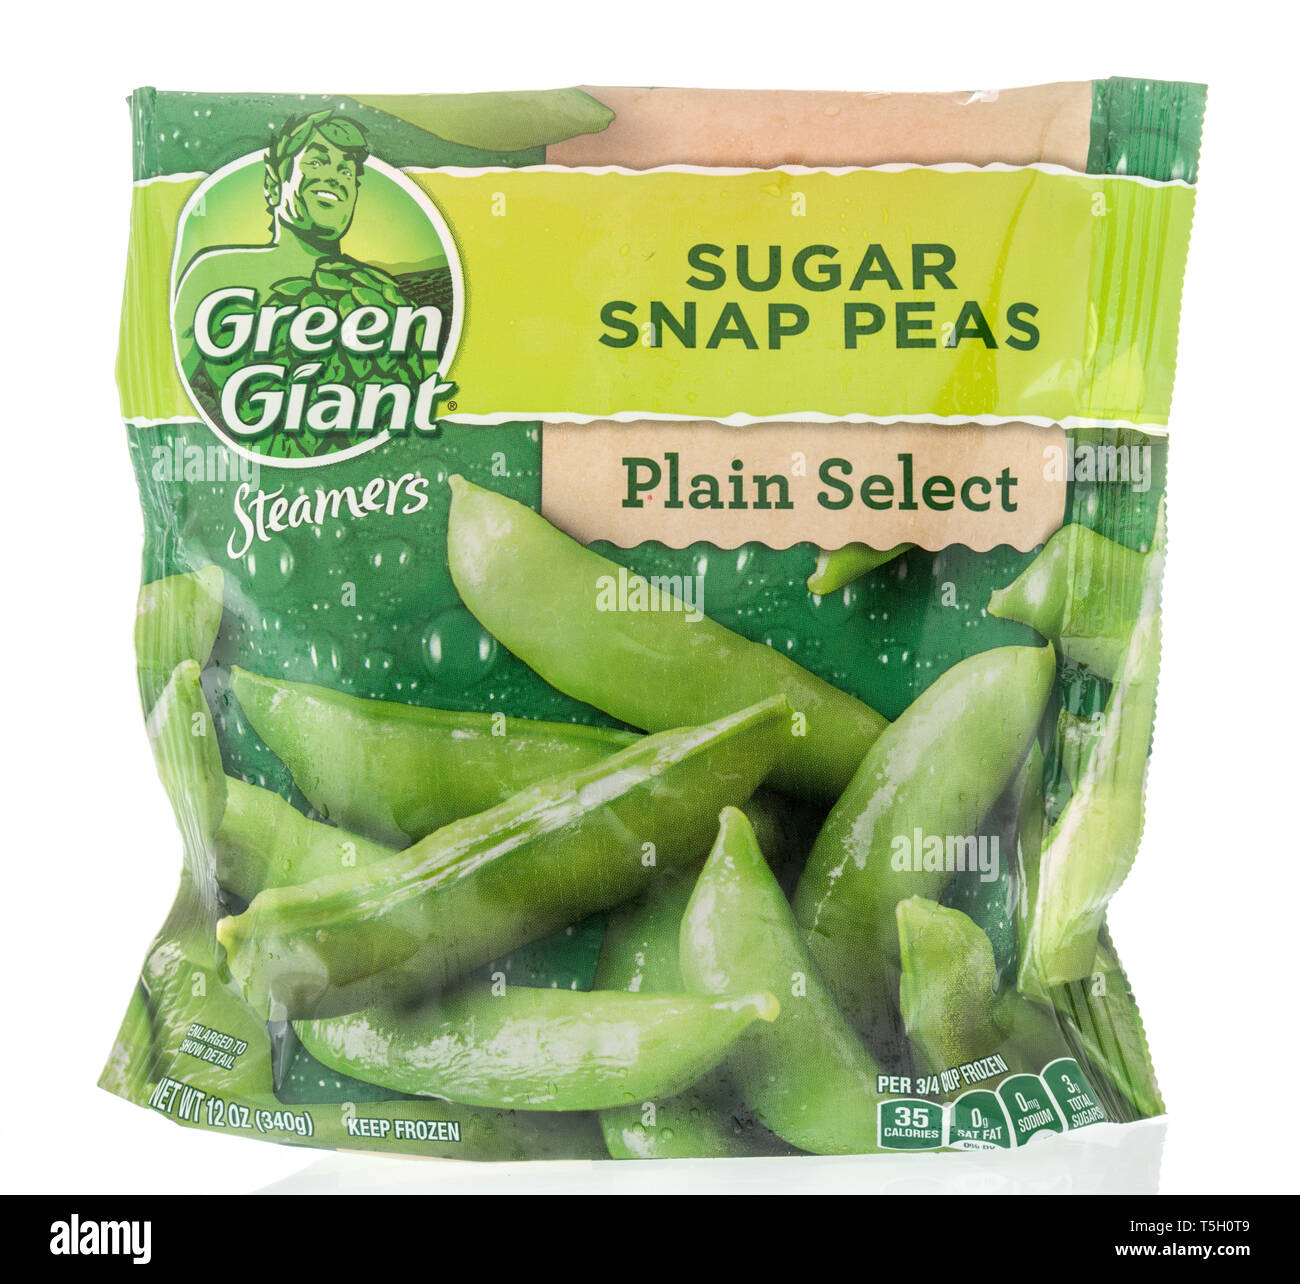 Winneconne, WI - 22. April 2019: ein Paket von grüner Riese Zuckerschoten plain wählen Sie Dampfer gefrorenes Gemüse auf einem isolierten Hintergrund Stockfoto